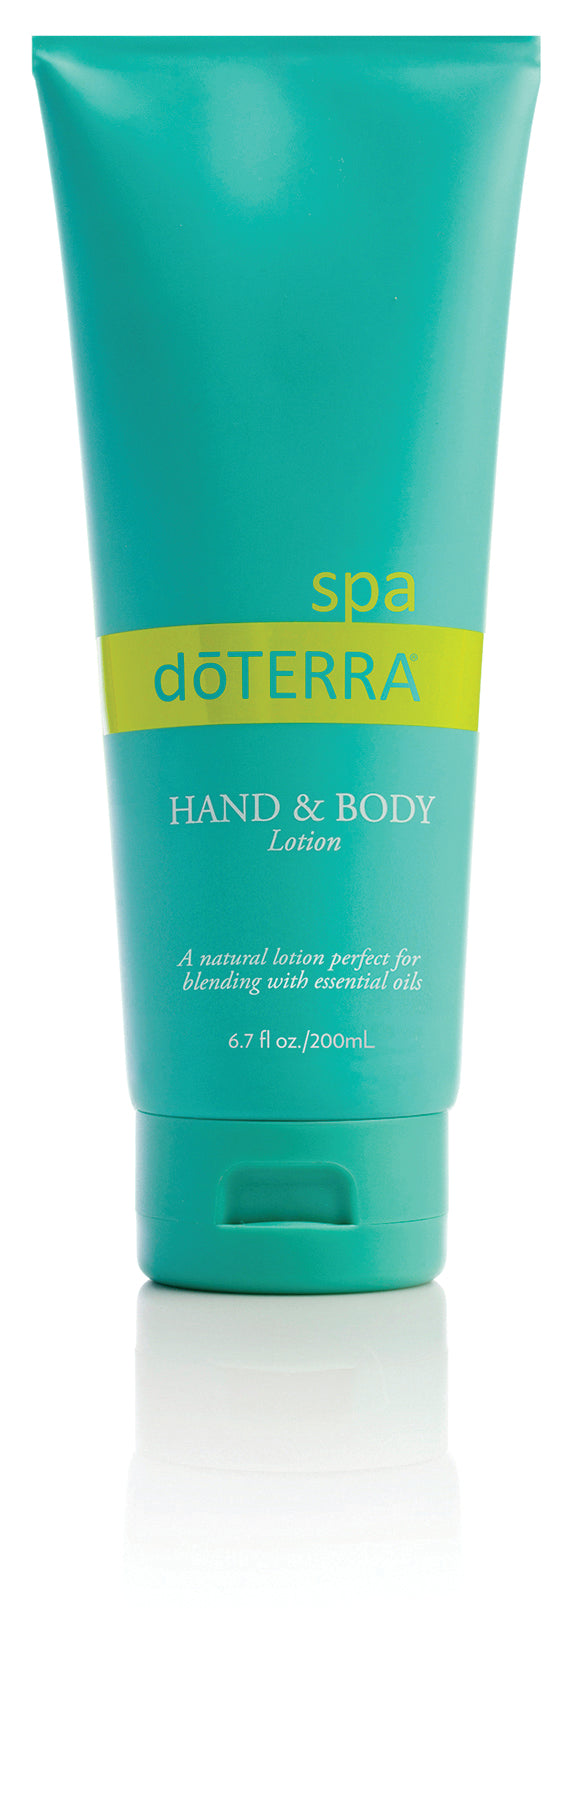 doTERRA Spa Hand & Body Lotion